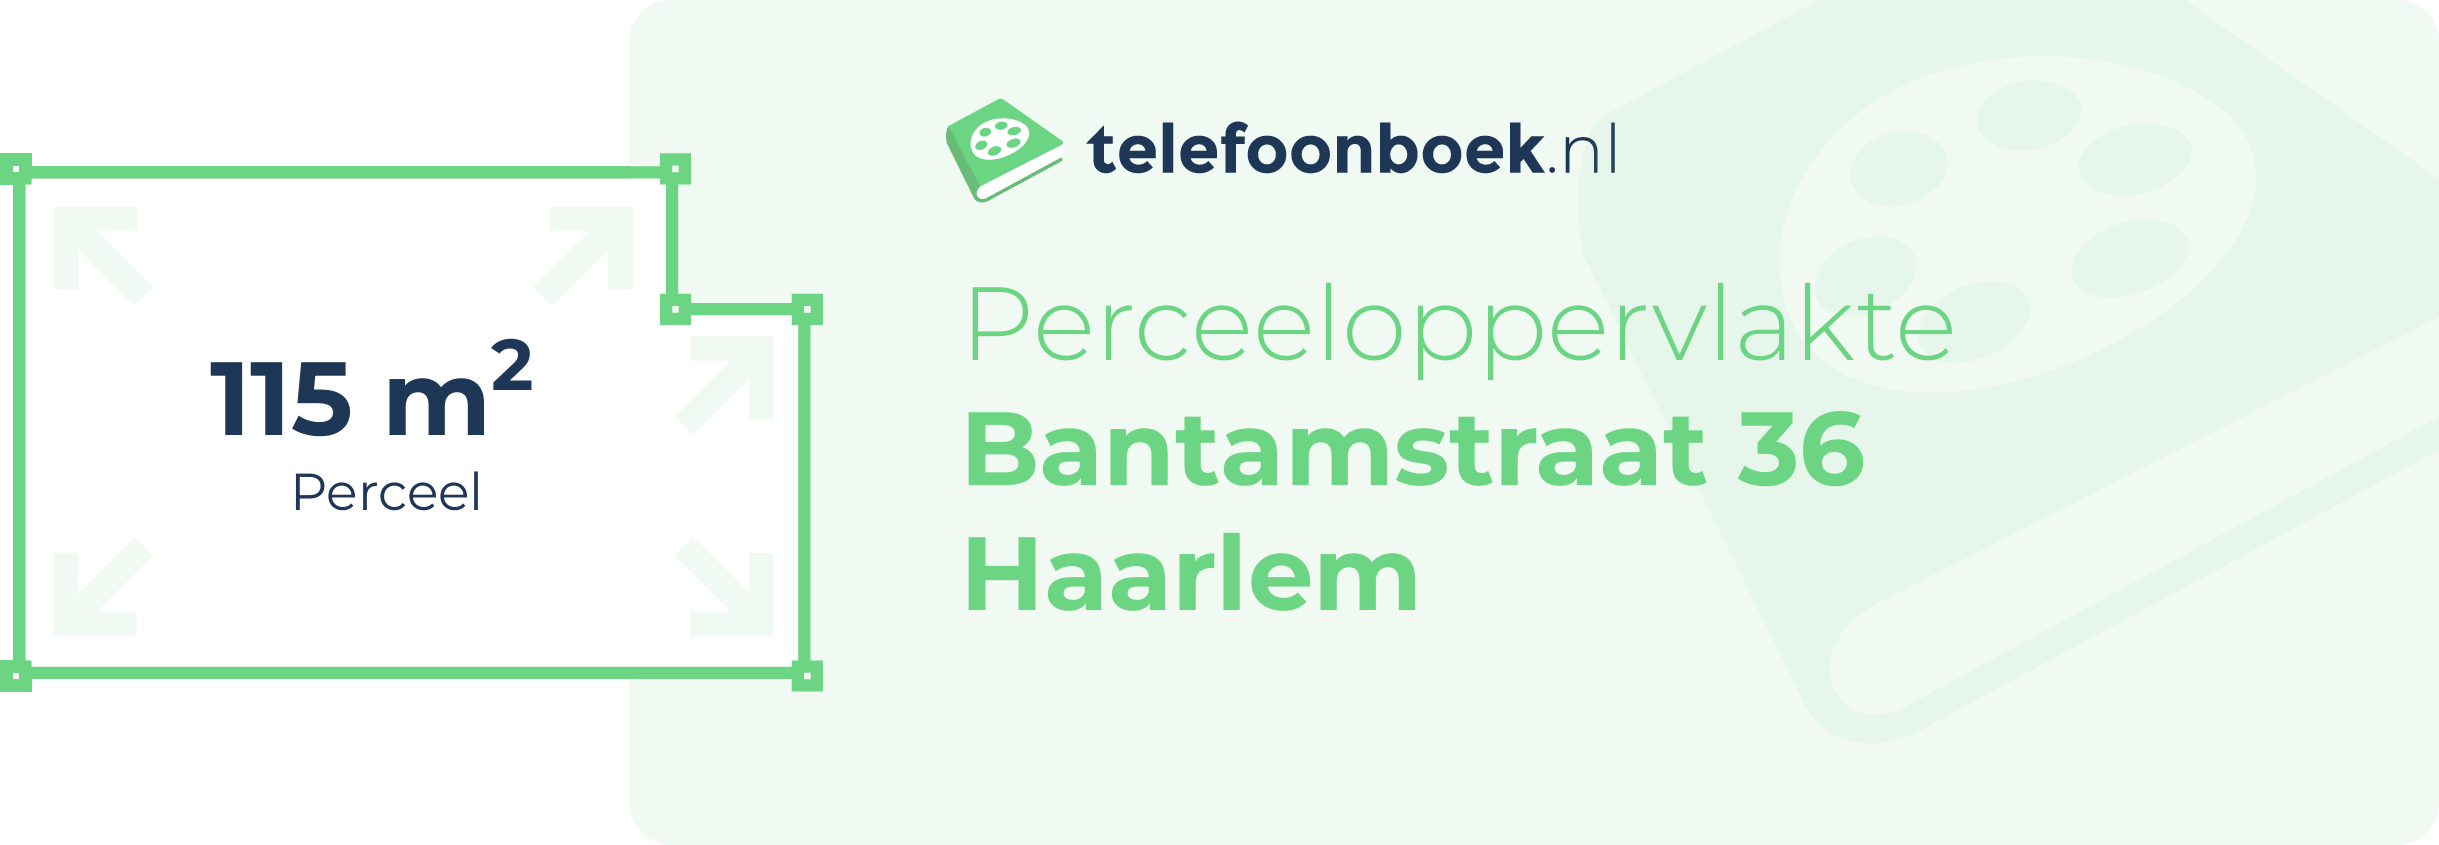 Perceeloppervlakte Bantamstraat 36 Haarlem